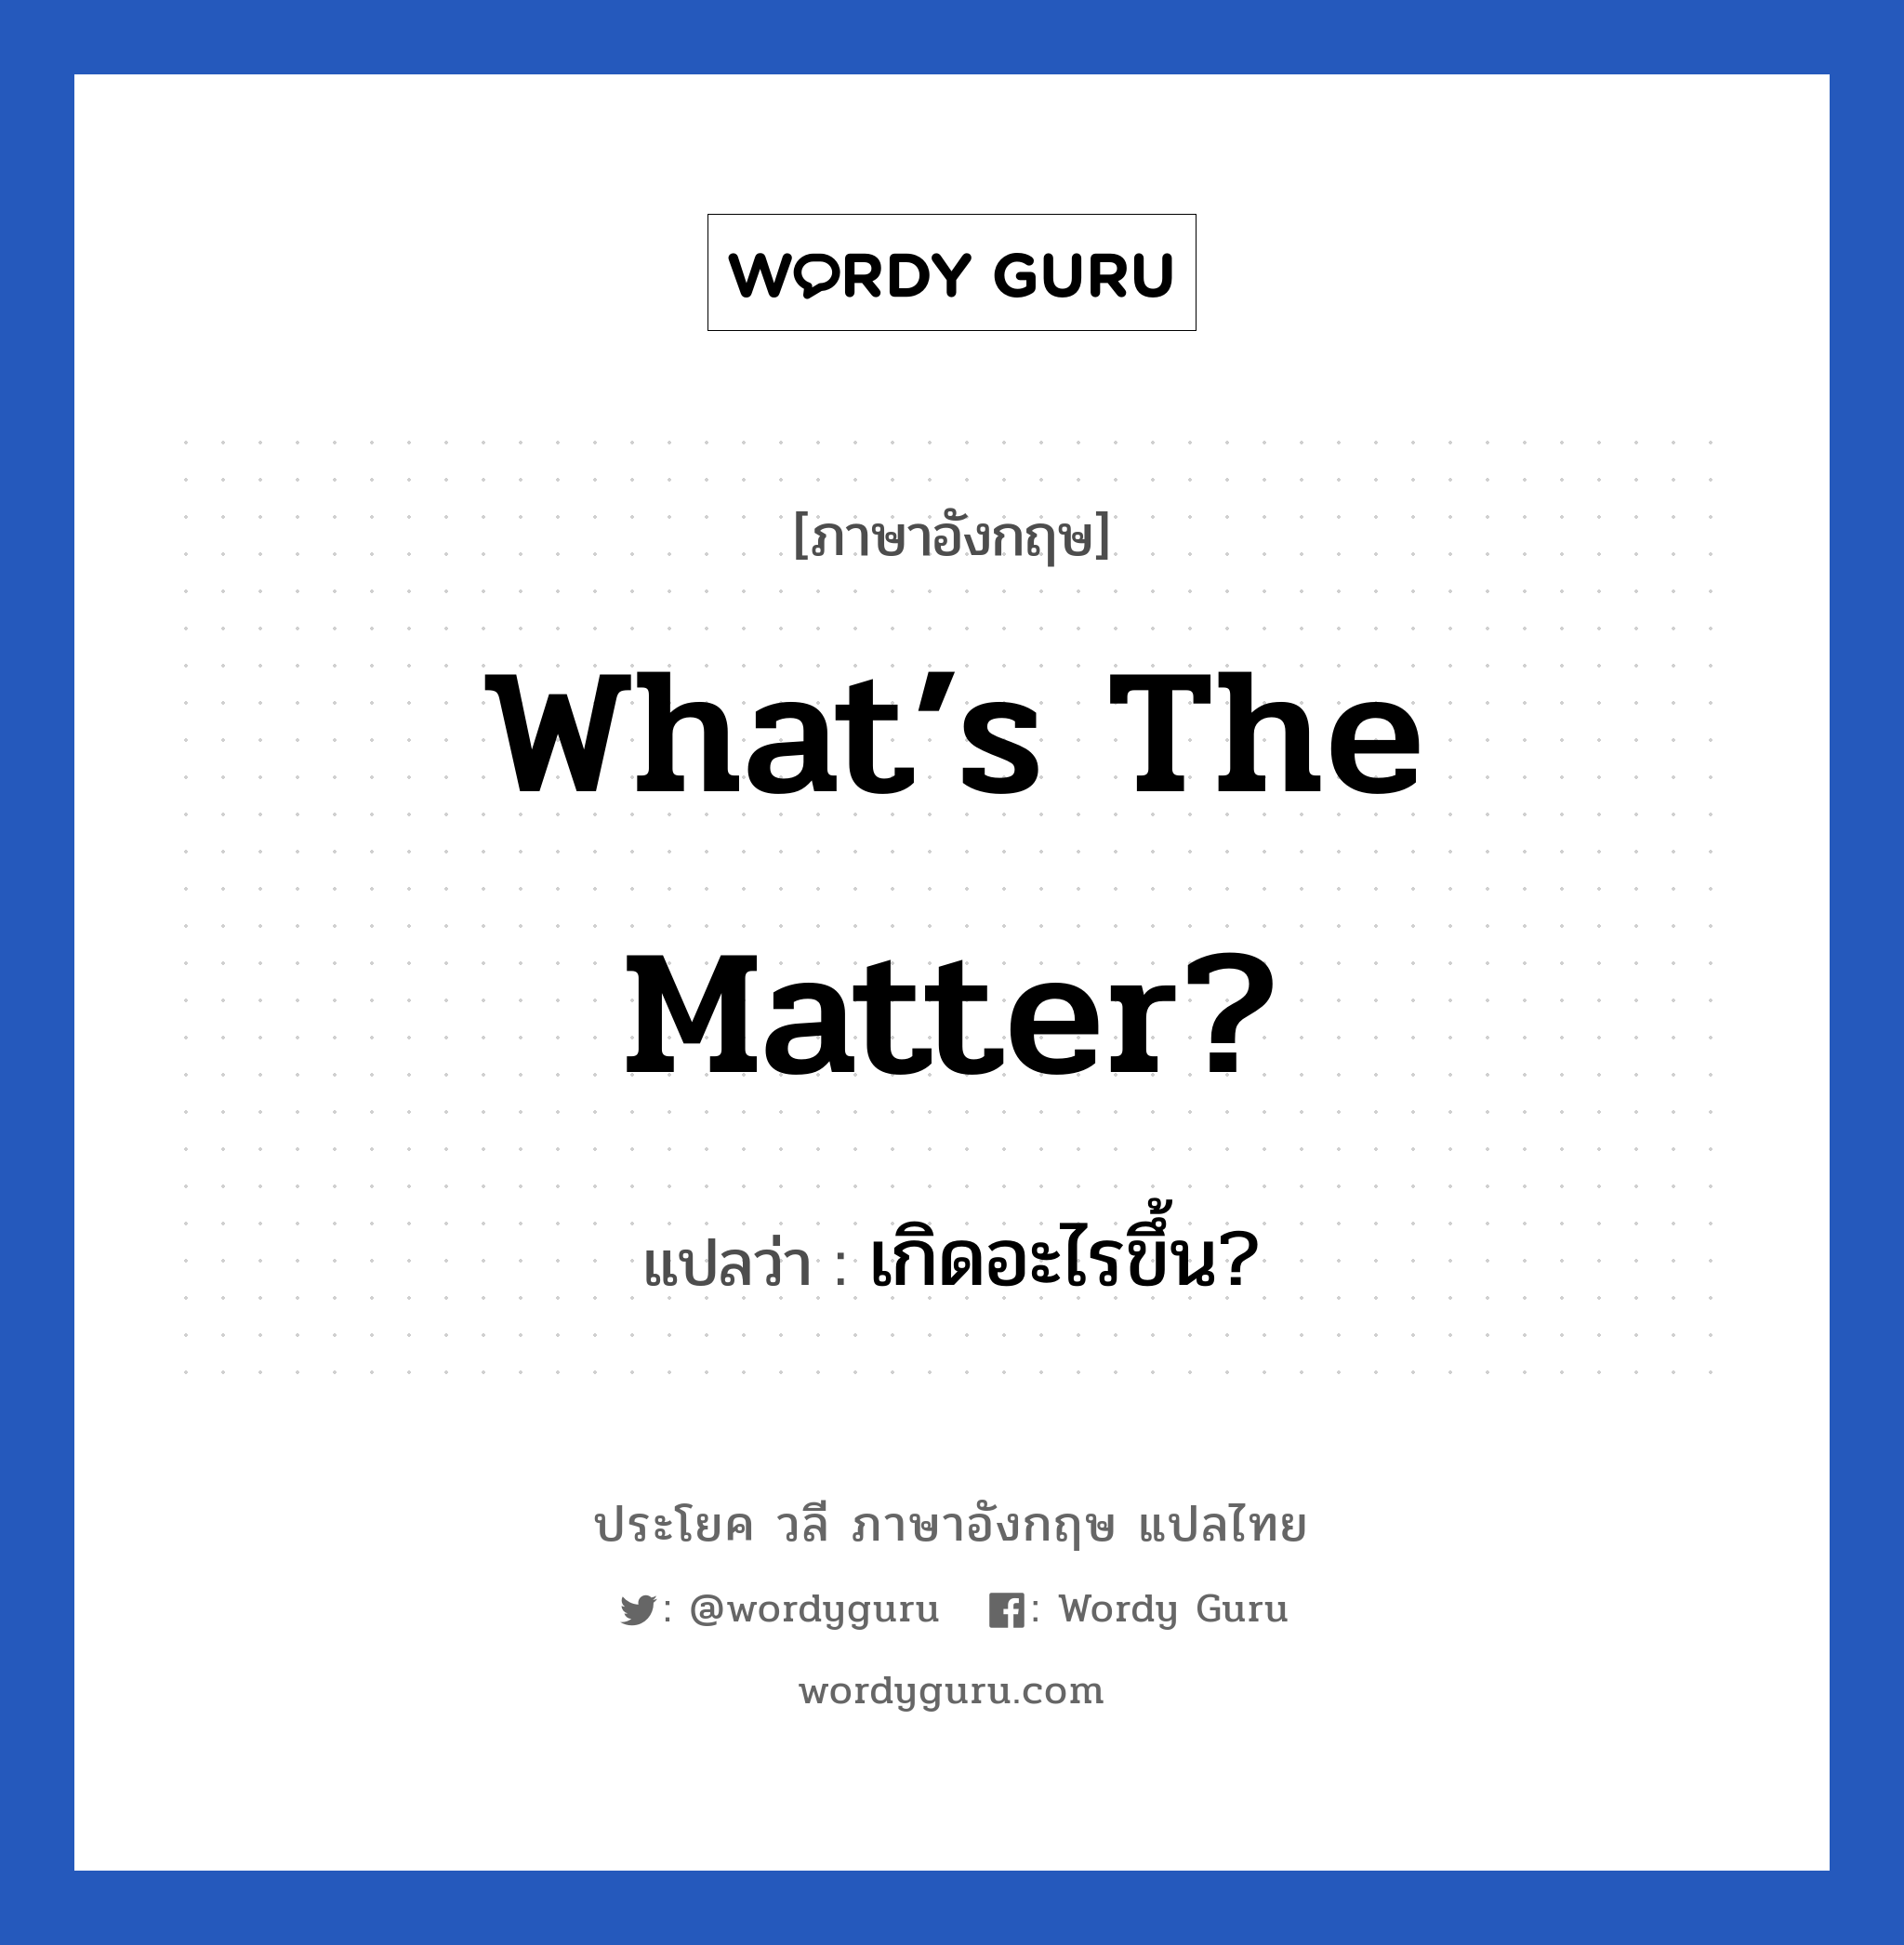 What’s the matter? แปลว่า?, วลีภาษาอังกฤษ What’s the matter? แปลว่า เกิดอะไรขึ้น?